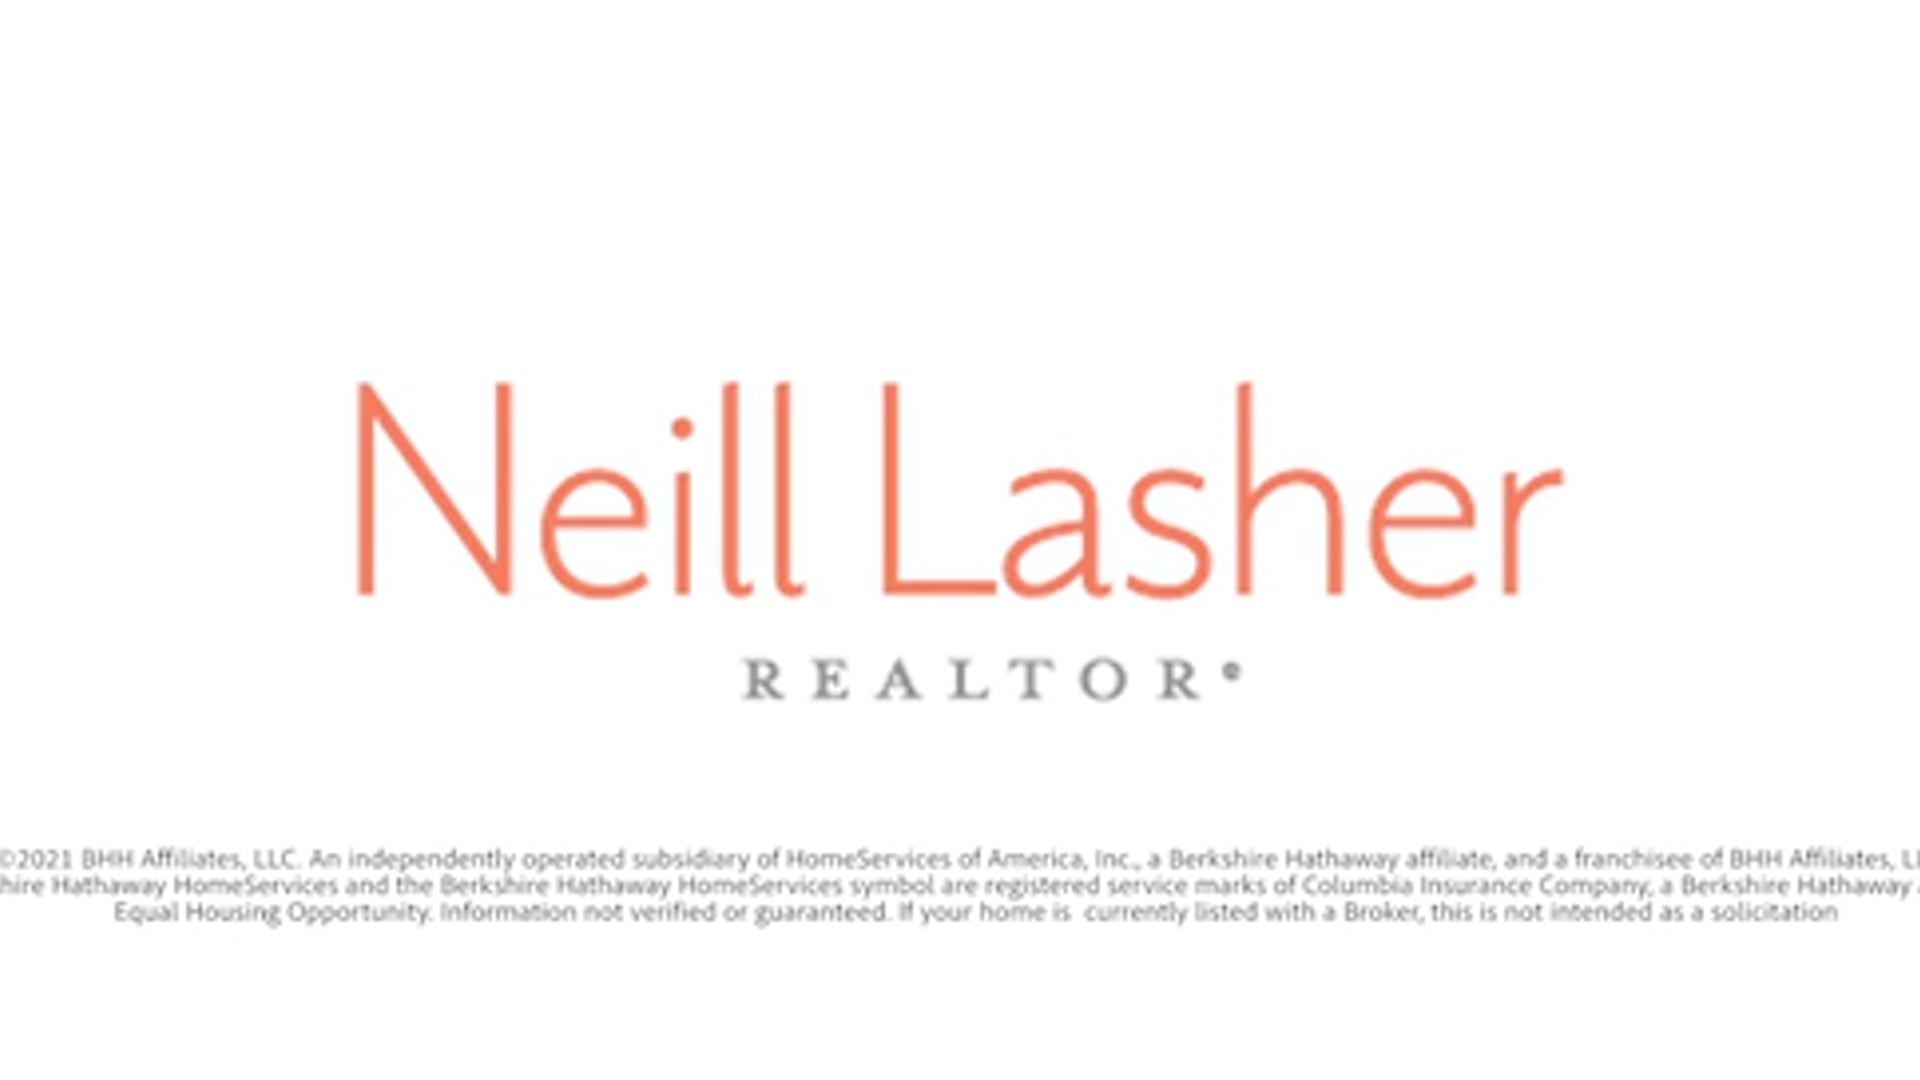 Neill Lasher Realtor